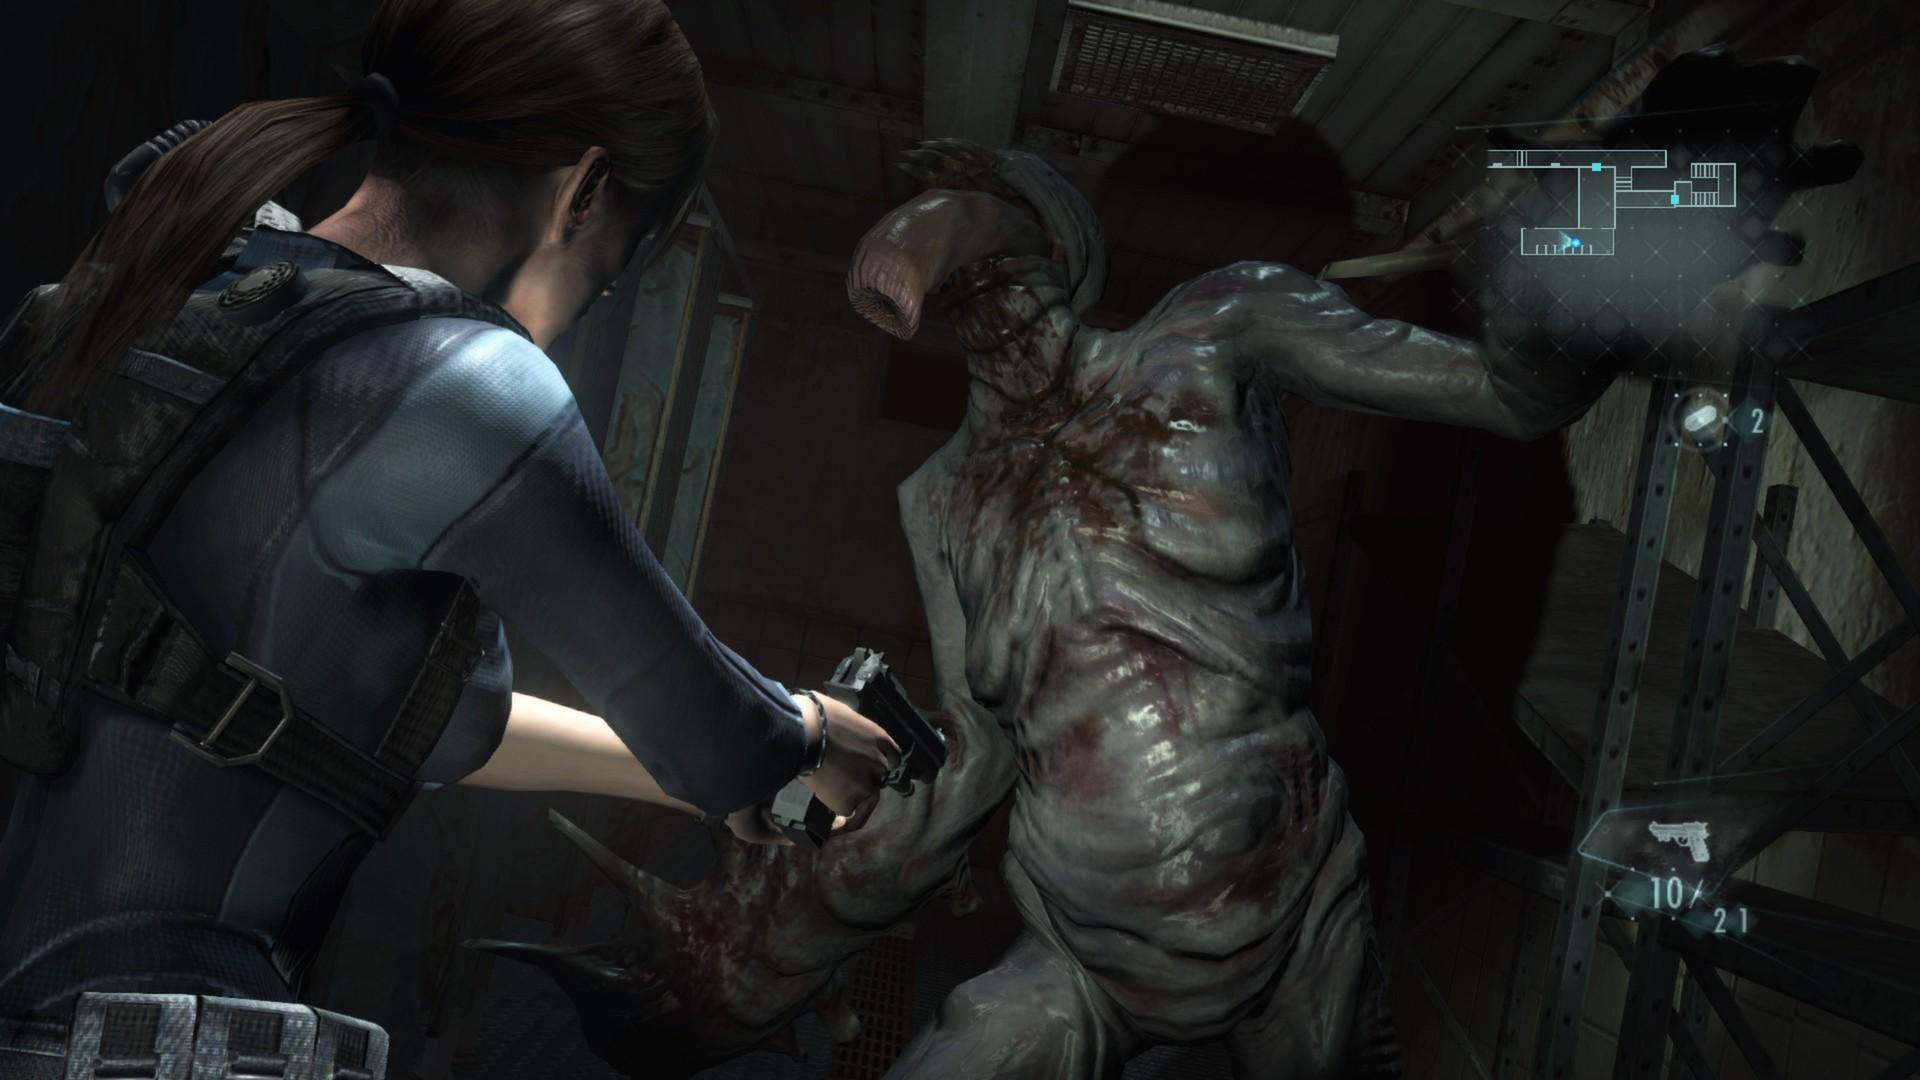 Screenshot №5 from game Resident Evil Revelations